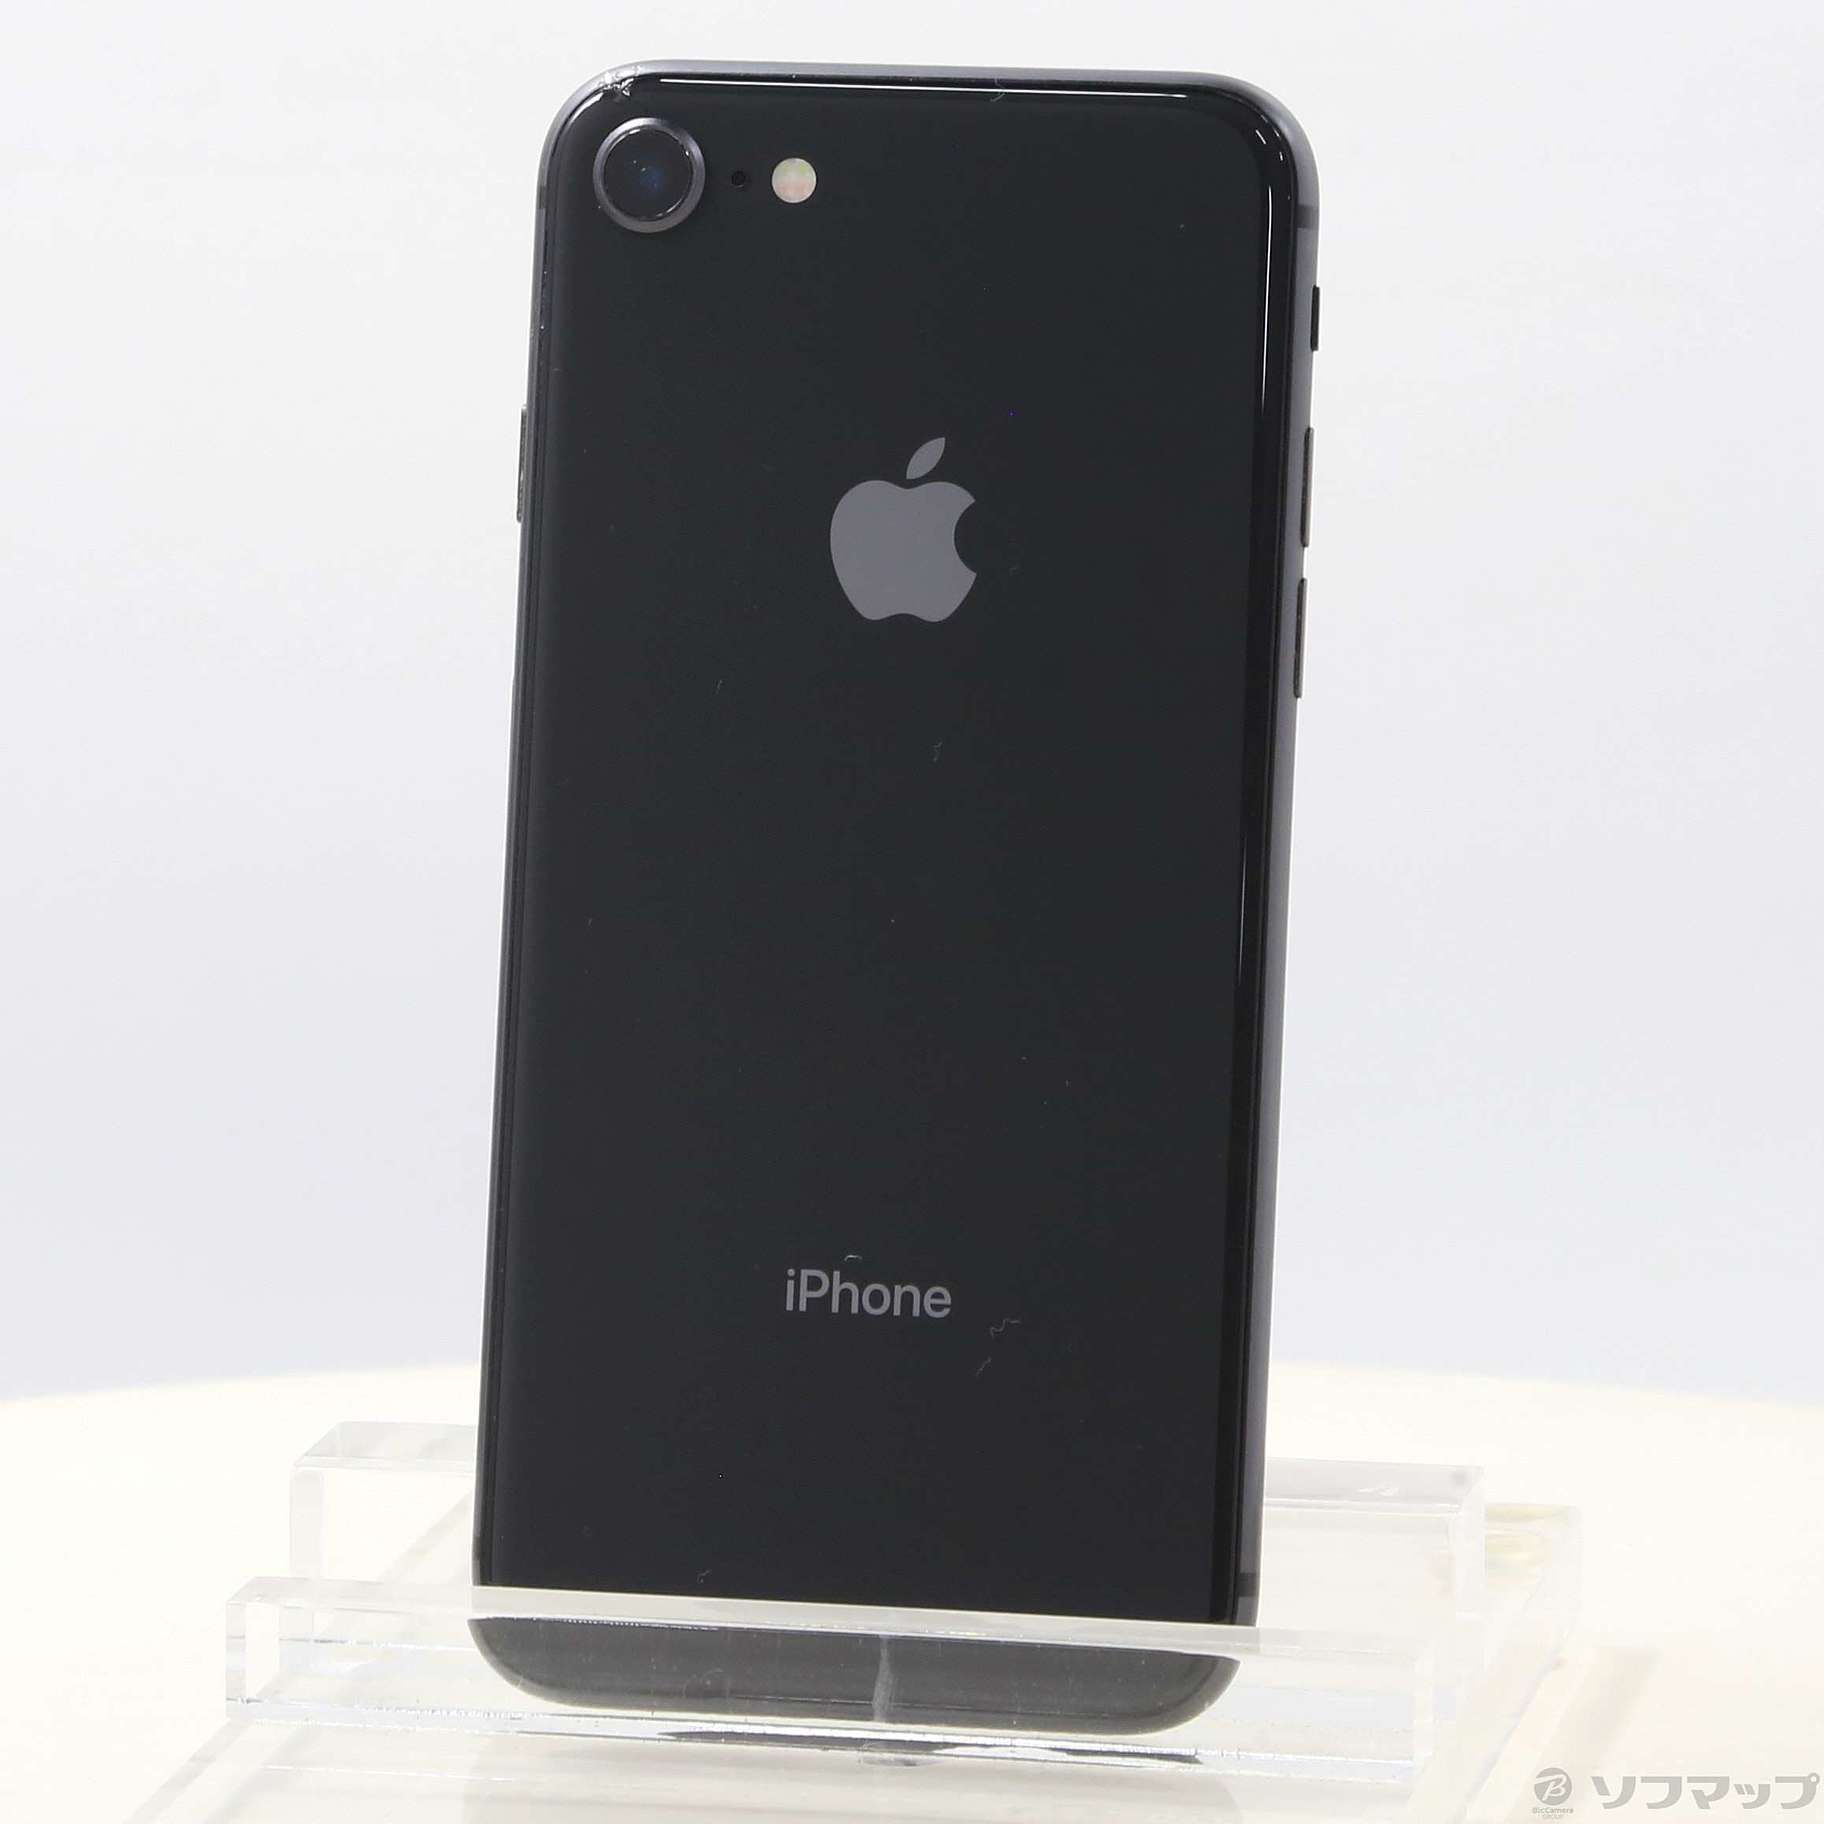 iPhone8 64G スペースグレイスマートフォン本体